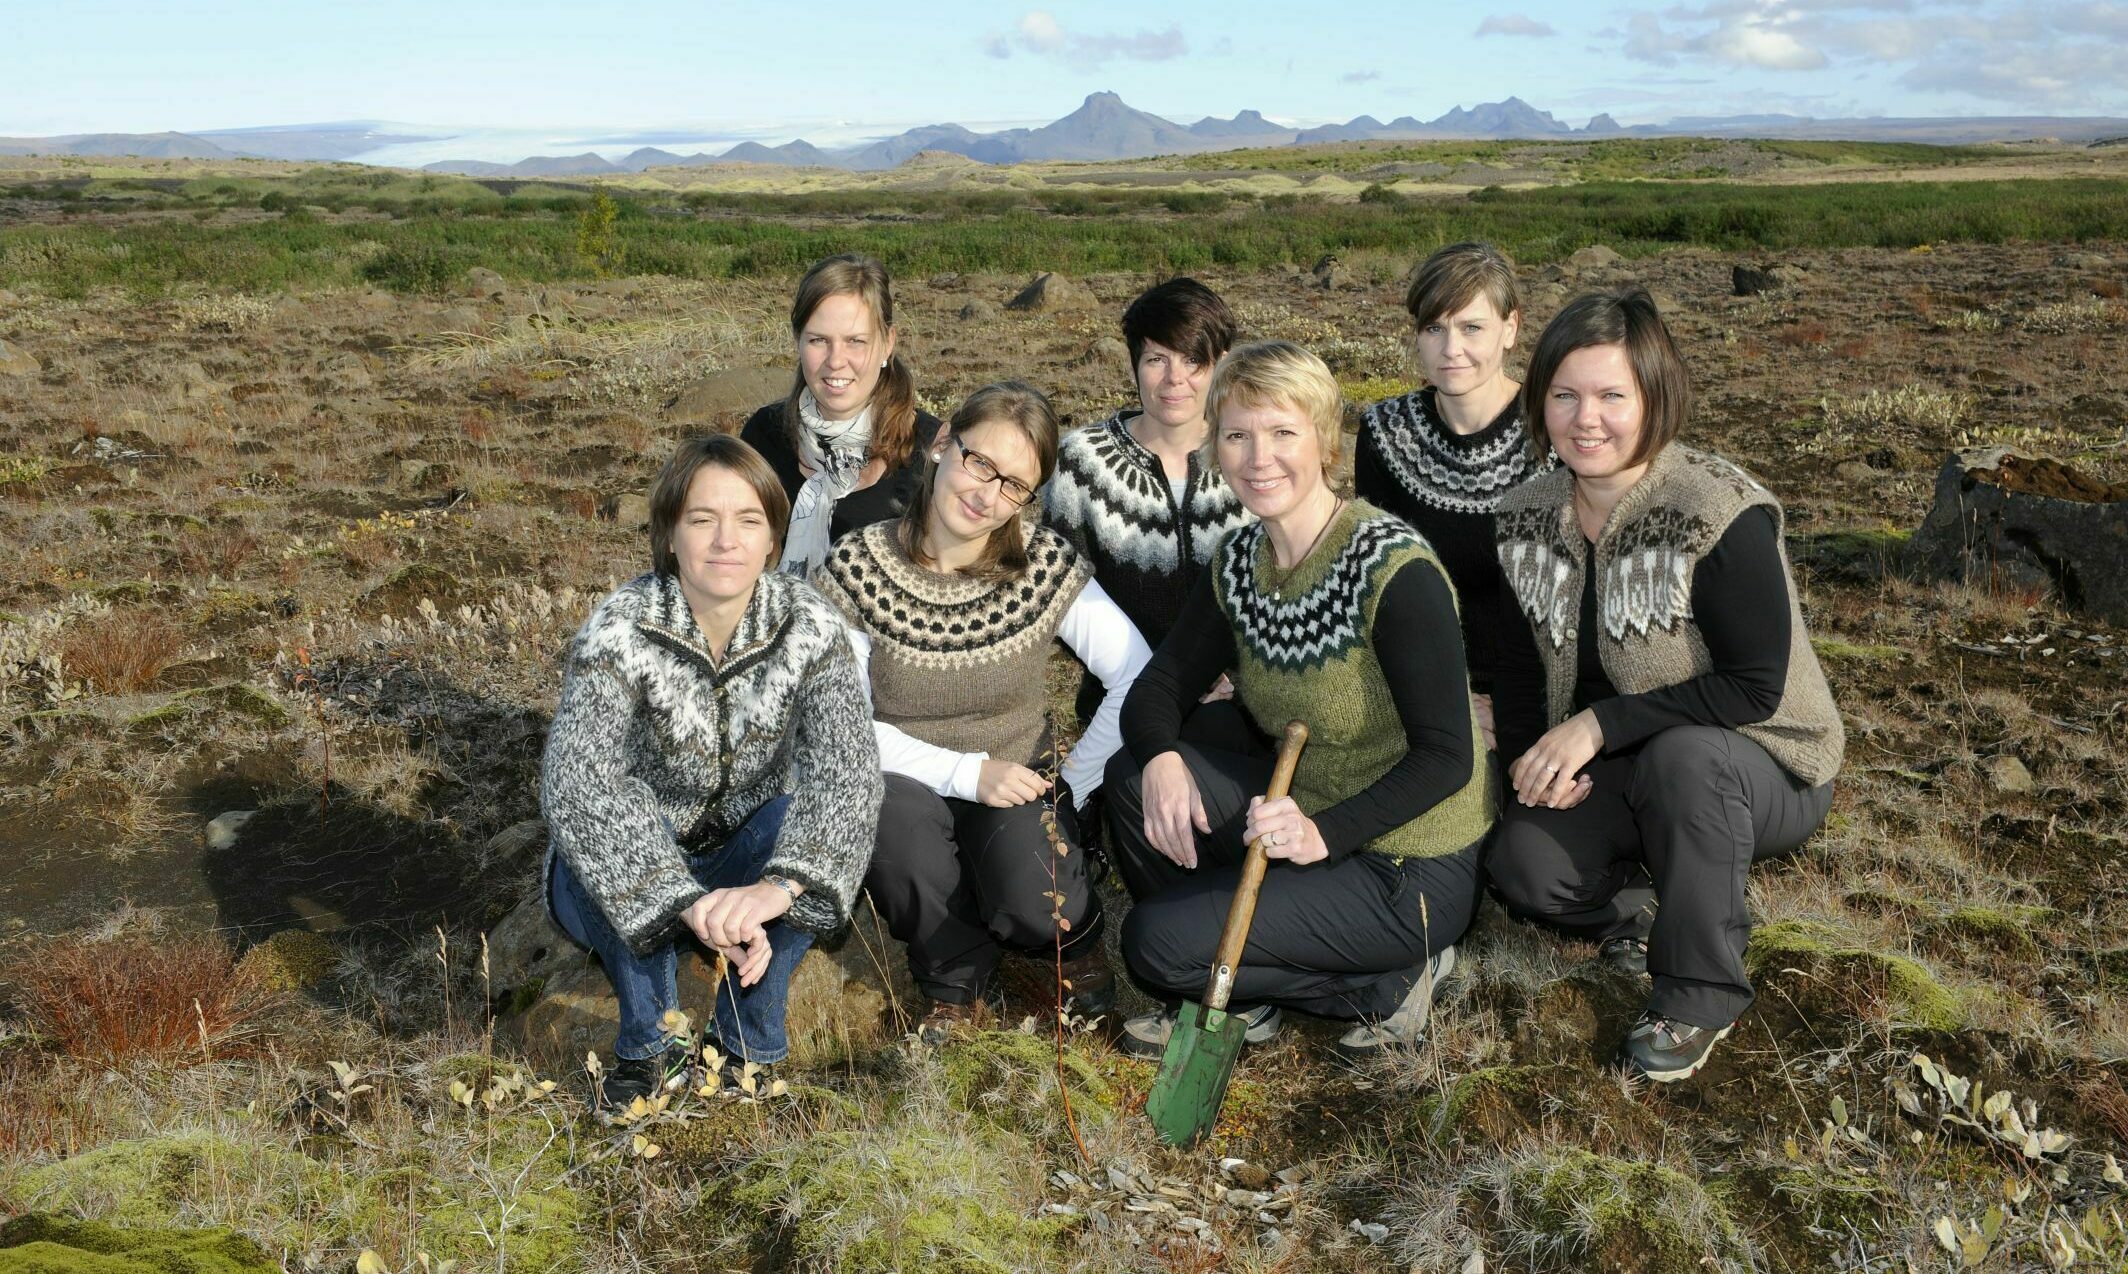 Katla Team in Island - Bäume pflanzen
Sieben Mitarbeiterinnen des Katla Teams Knien am Boden, eine hält eine Schaufel in der Hand. Im Hintergrund die Hochebene zu erkennen.